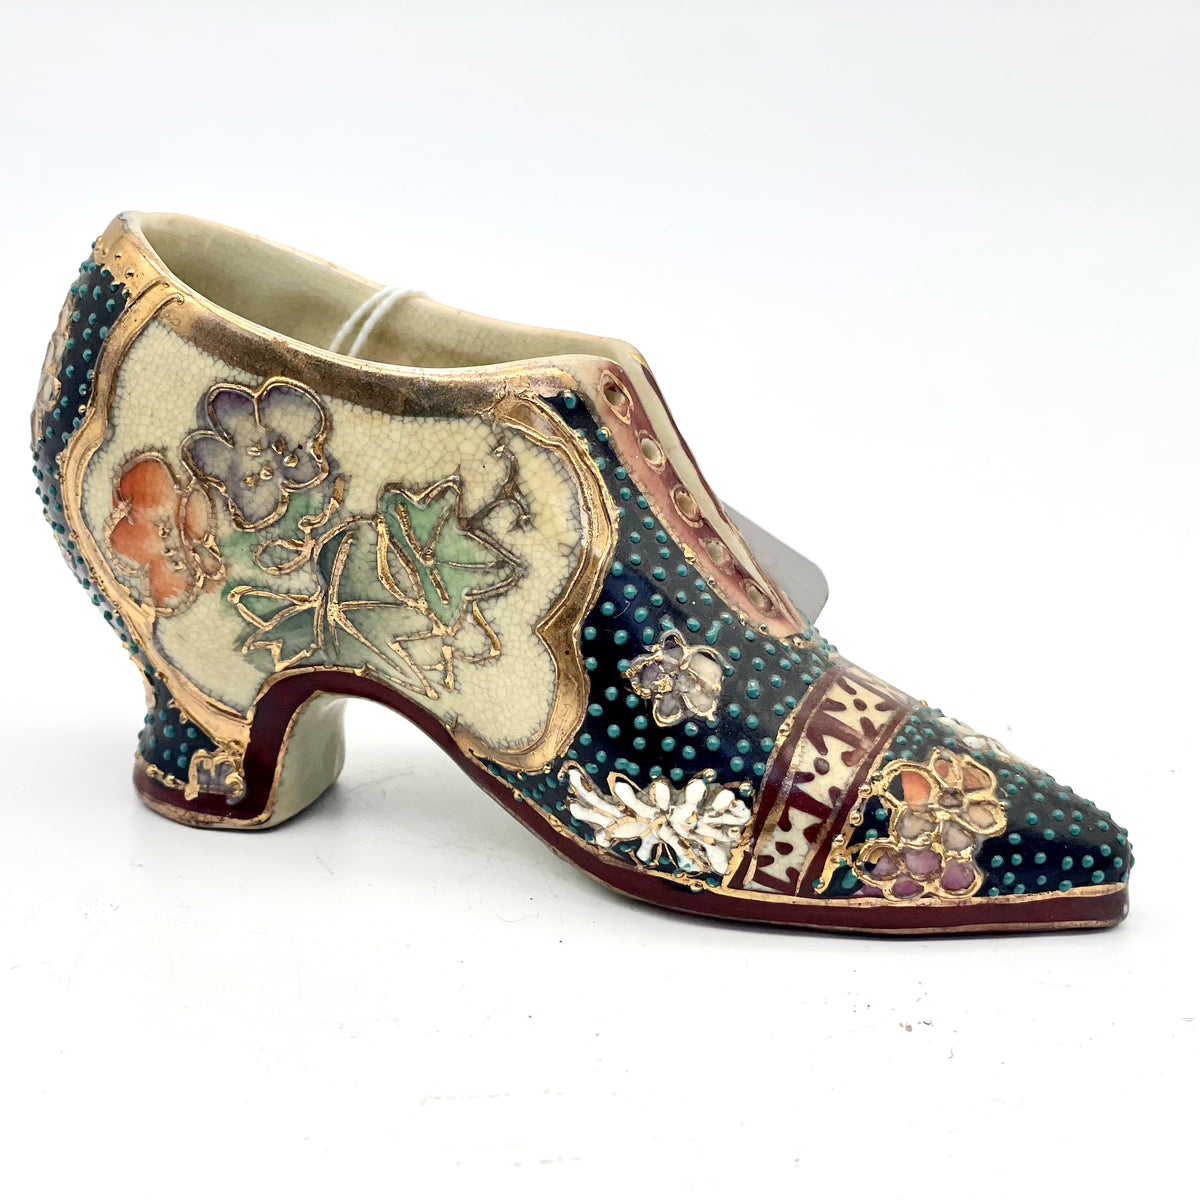 Vintage Satsuma shoe ornament – Market Fair